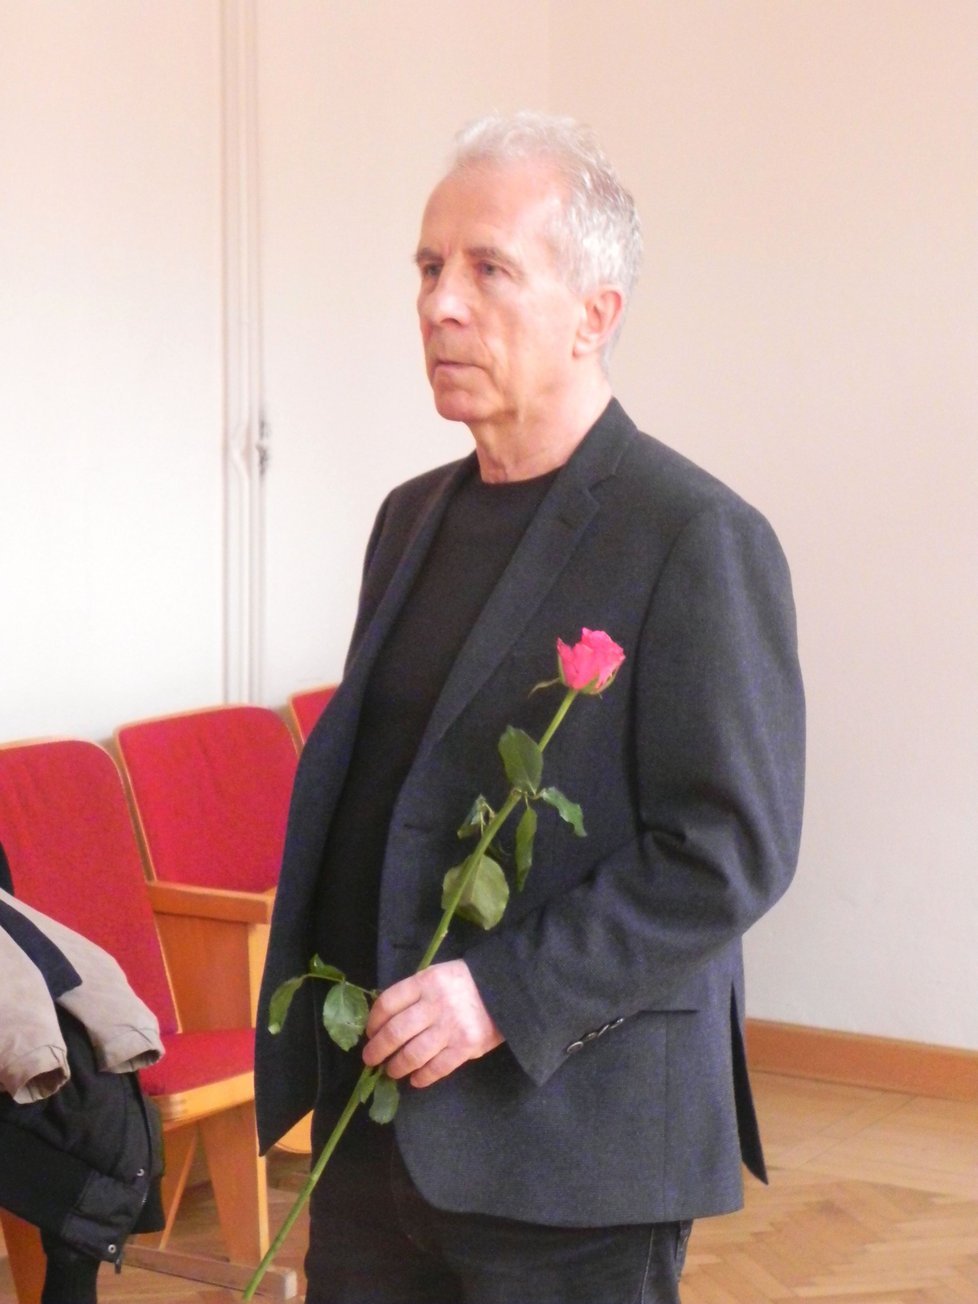 František Divoký (71) chtěl své obžalované ženě předat růži při MDŽ. Eskorta to nedovolila. Soud navíc zamítl návrh na propuštění jeho choti z vazby na kauci 5 milionů.